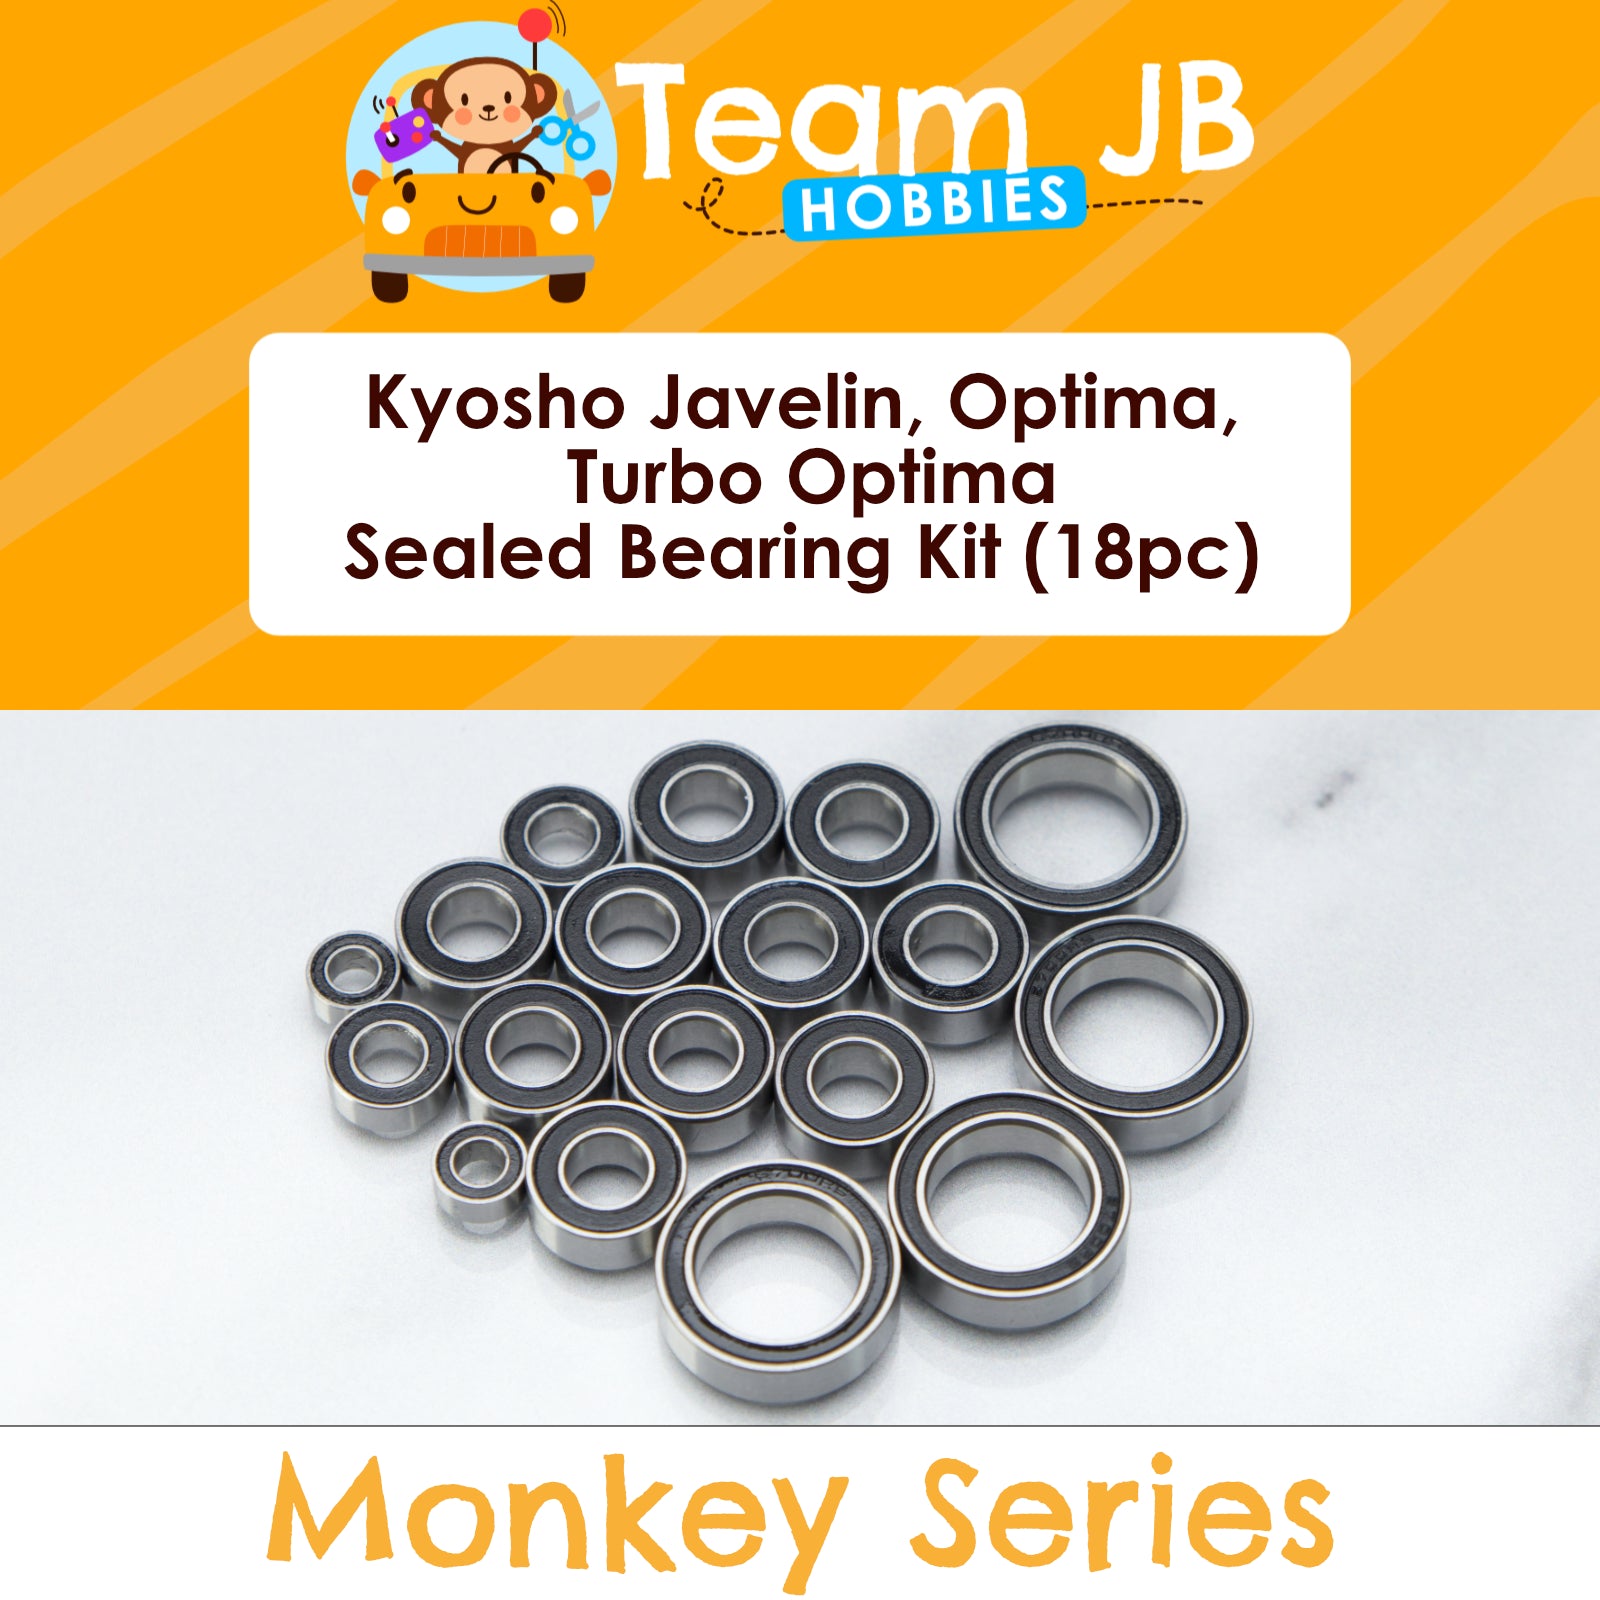 Kyosho Javelin, Optima, Turbo Optima - Sealed Bearing Kit